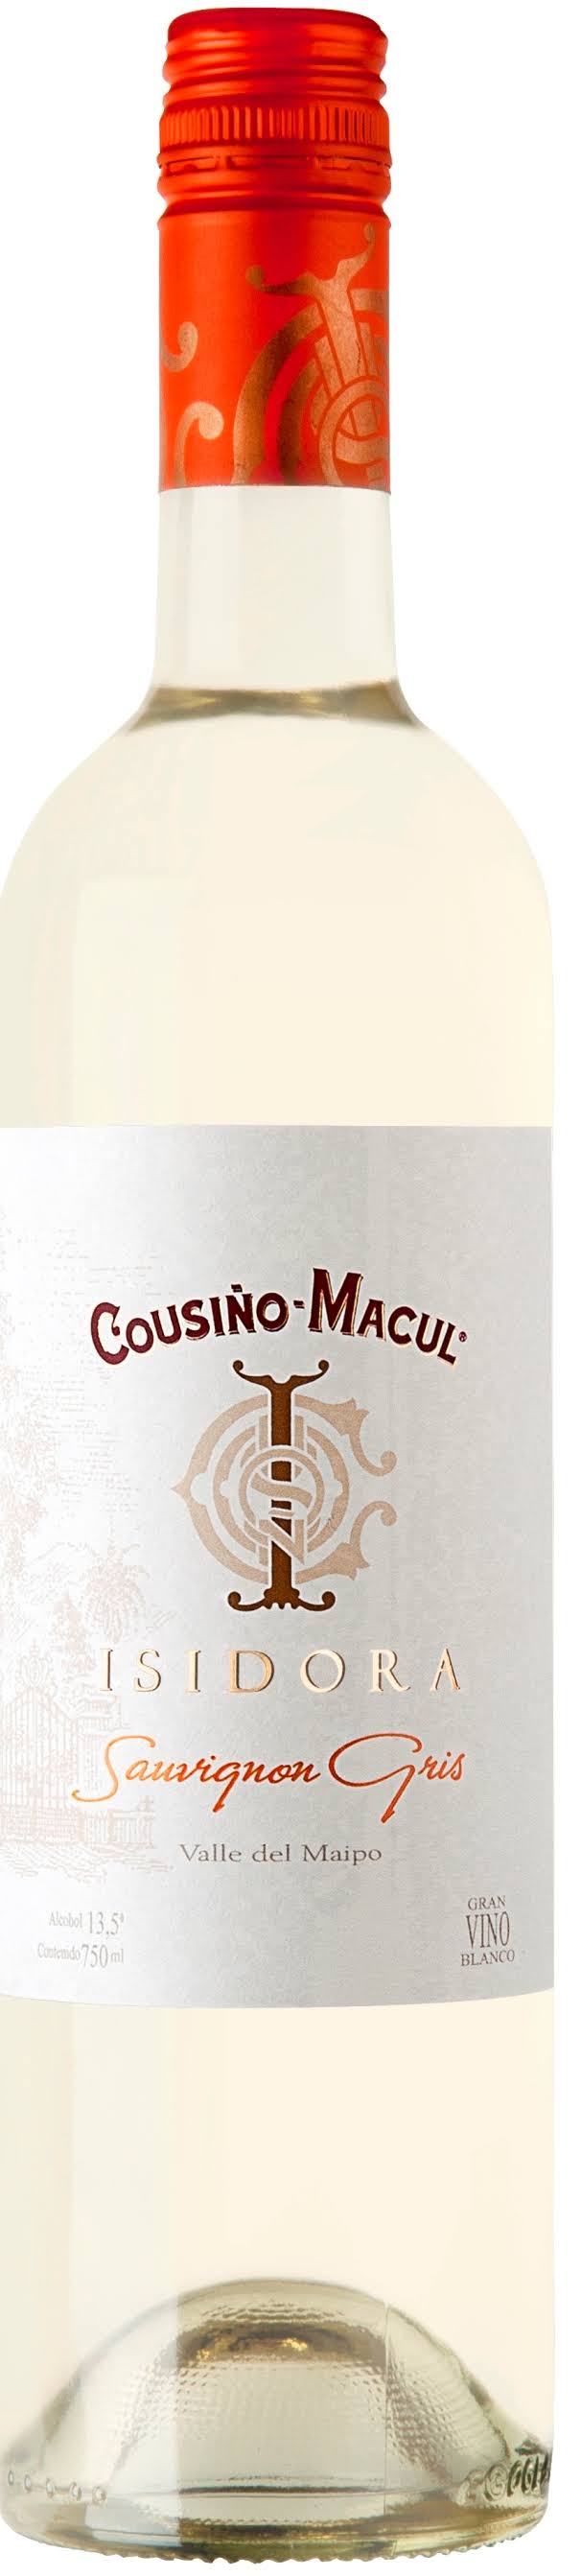 Cousino Macul Sauvignon Gris, Chile (Vintage Varies) - 750 ml bottle